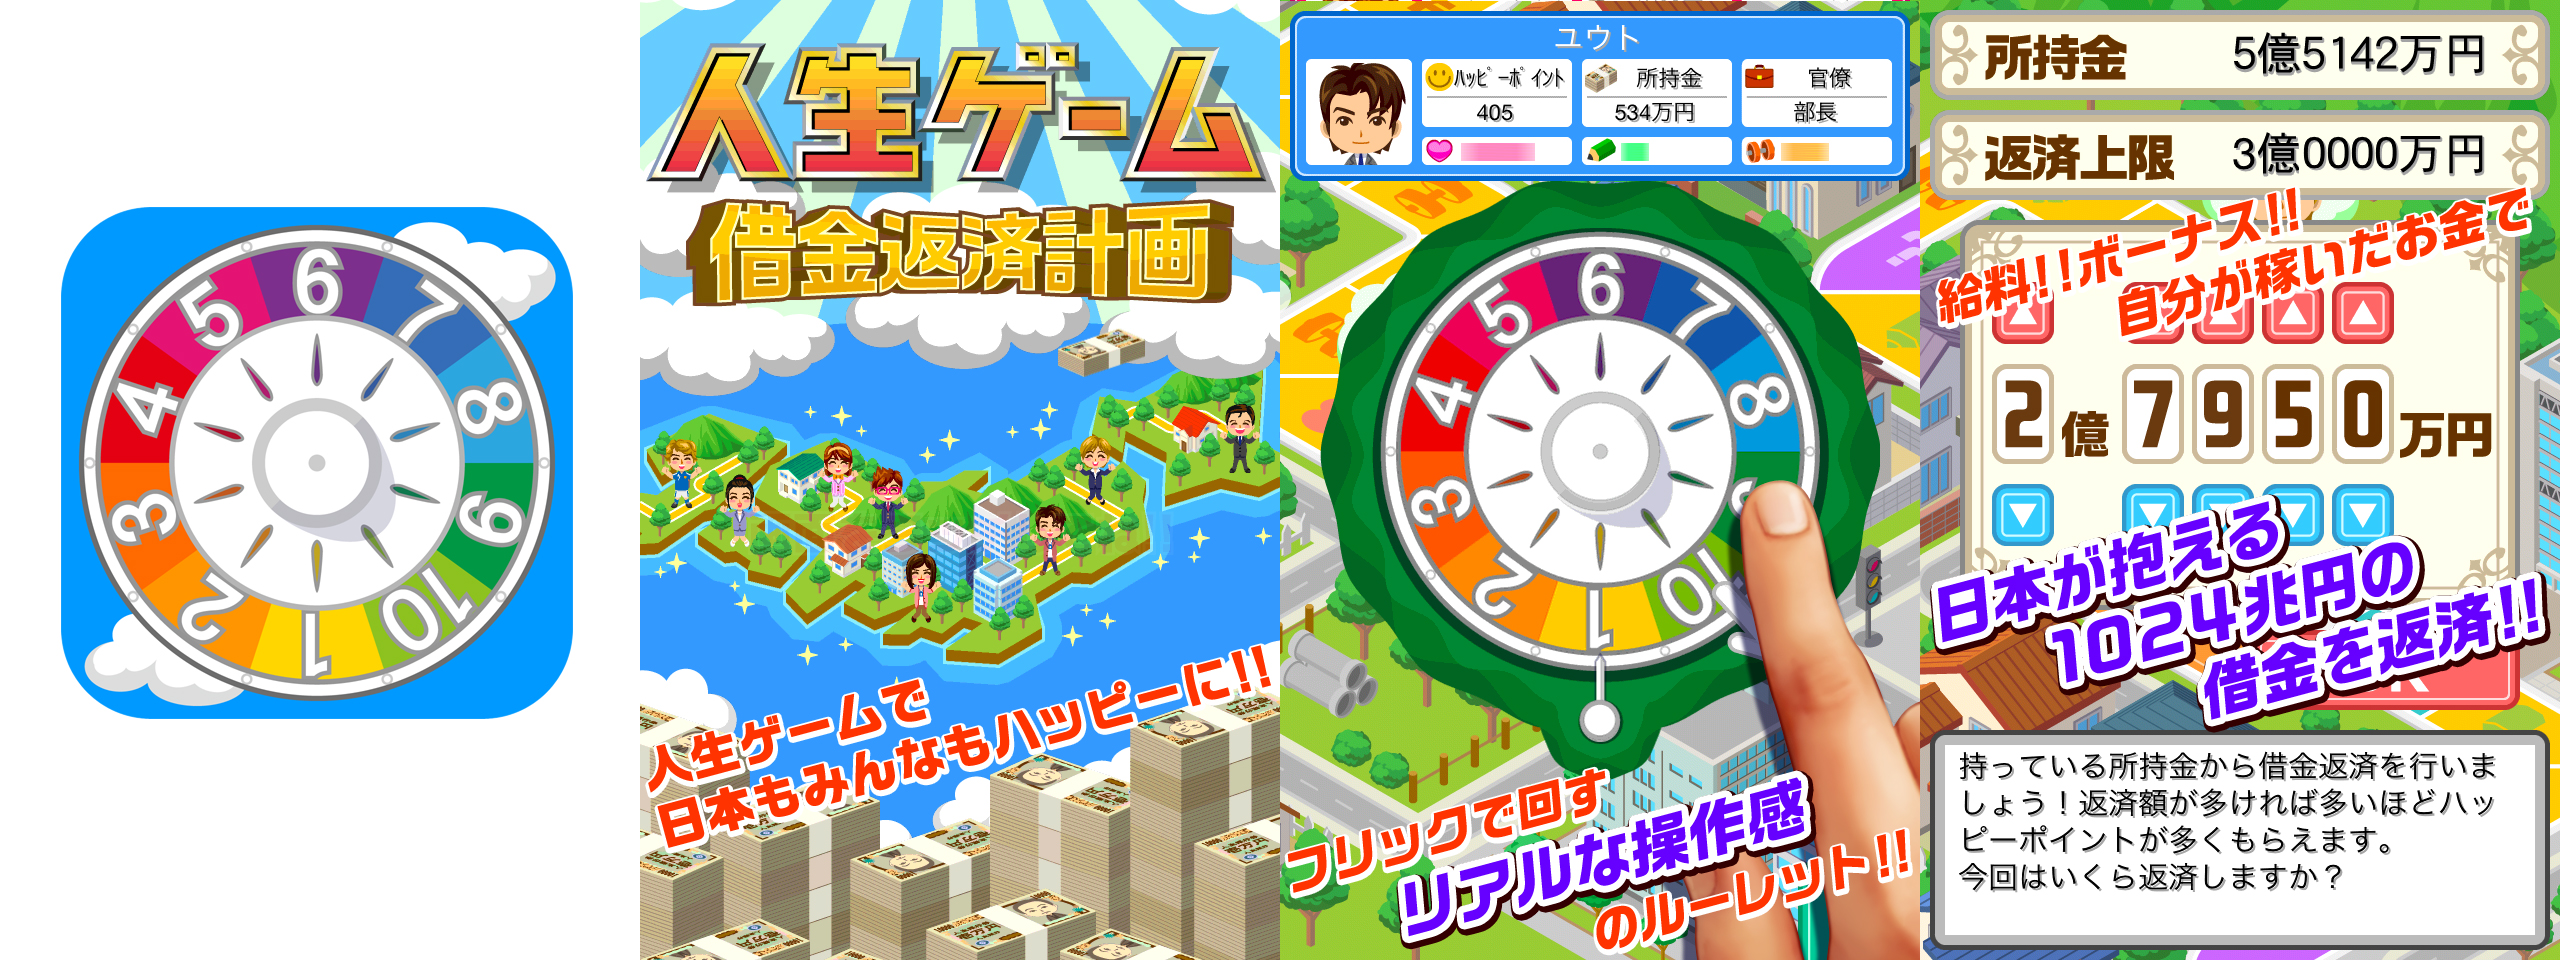 人生ゲーム スマホアプリ第2弾 Appstore Google Playで配信開始 Cnet Japan